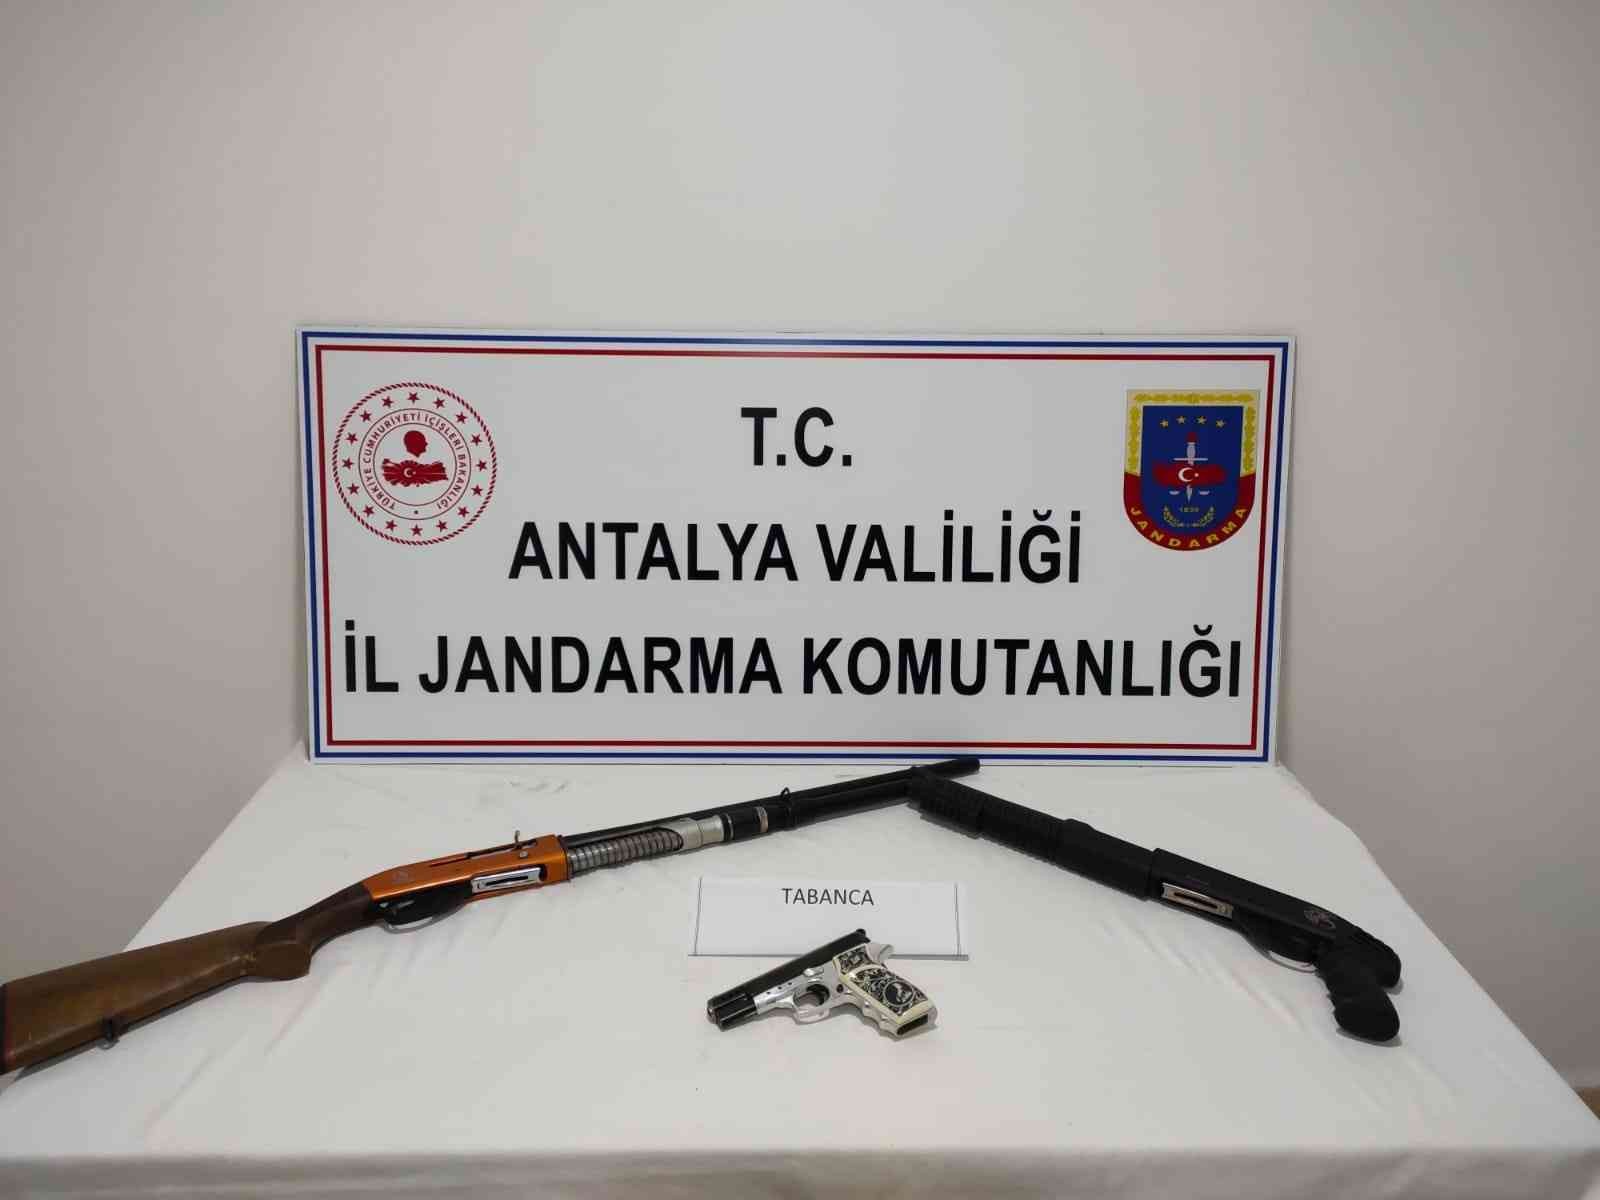 Manavgat’ta cezaevinden izinli çıkıp tabanca ve av tüfeği ile yakalandı #antalya